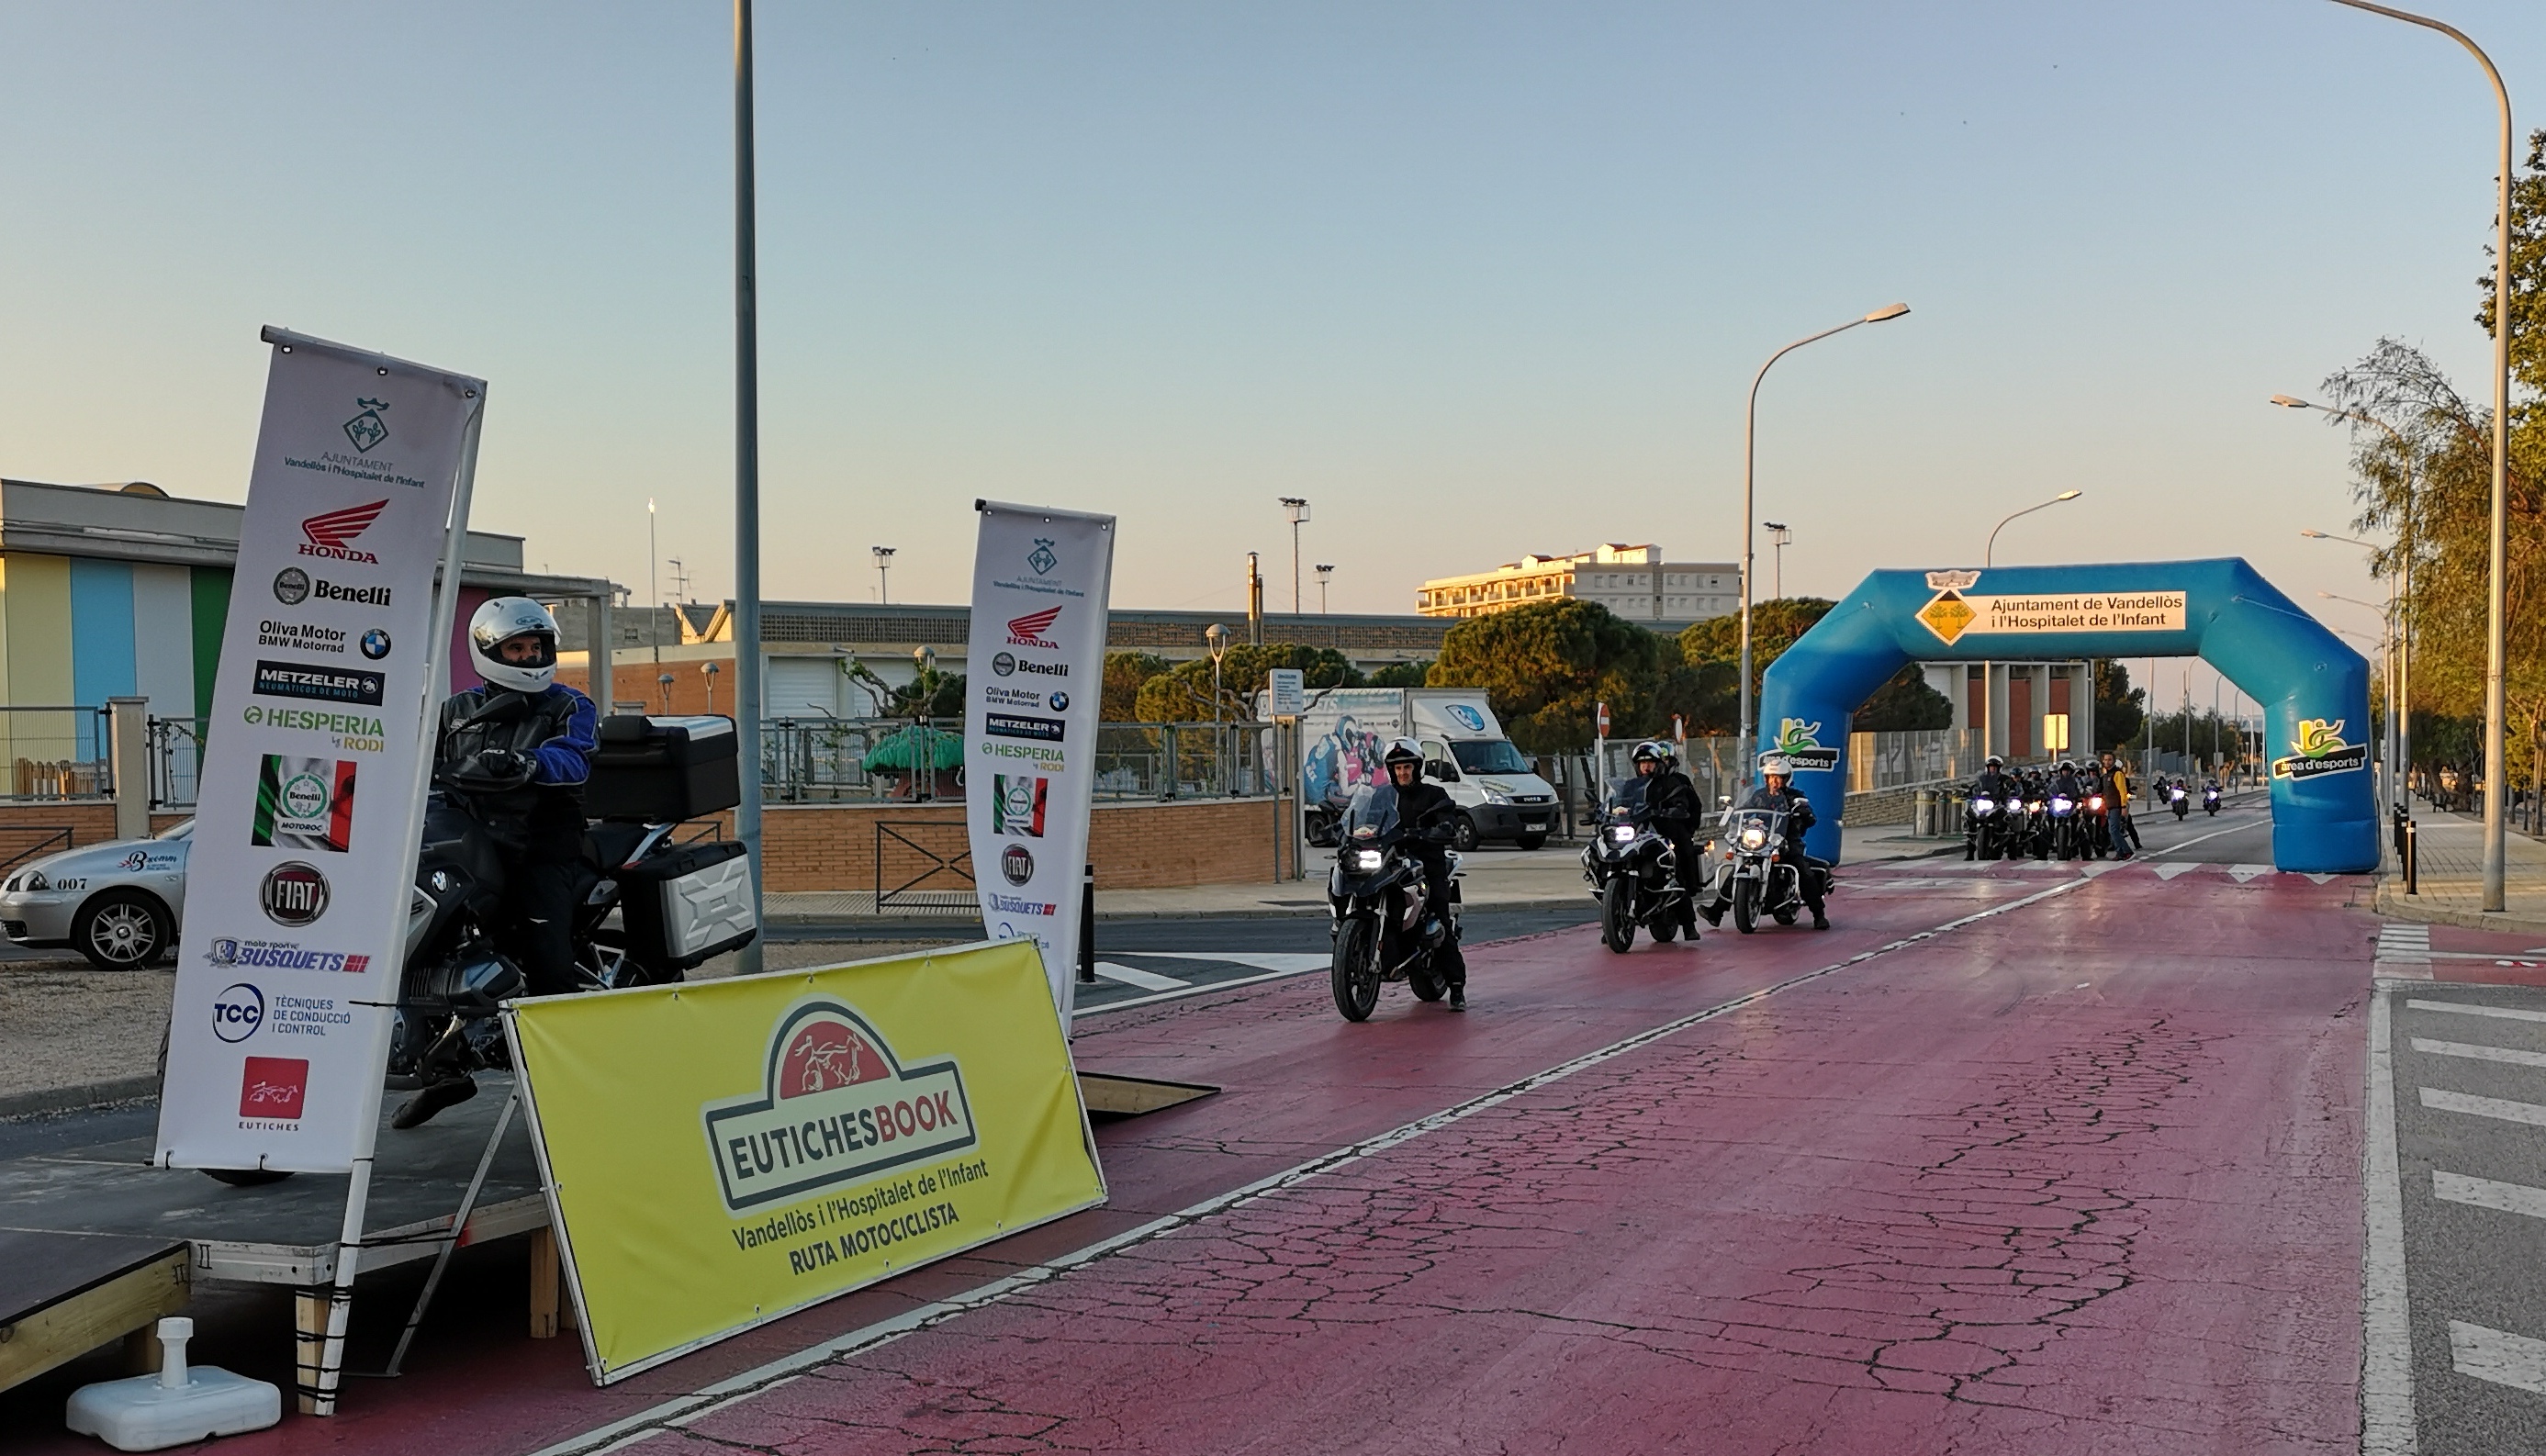 L’EUTICHESBOOK 2021 aplegarà 250 motociclistes a Vandellòs i l’Hospitalet de l’Infant els dies 1 i 2 d’octubre